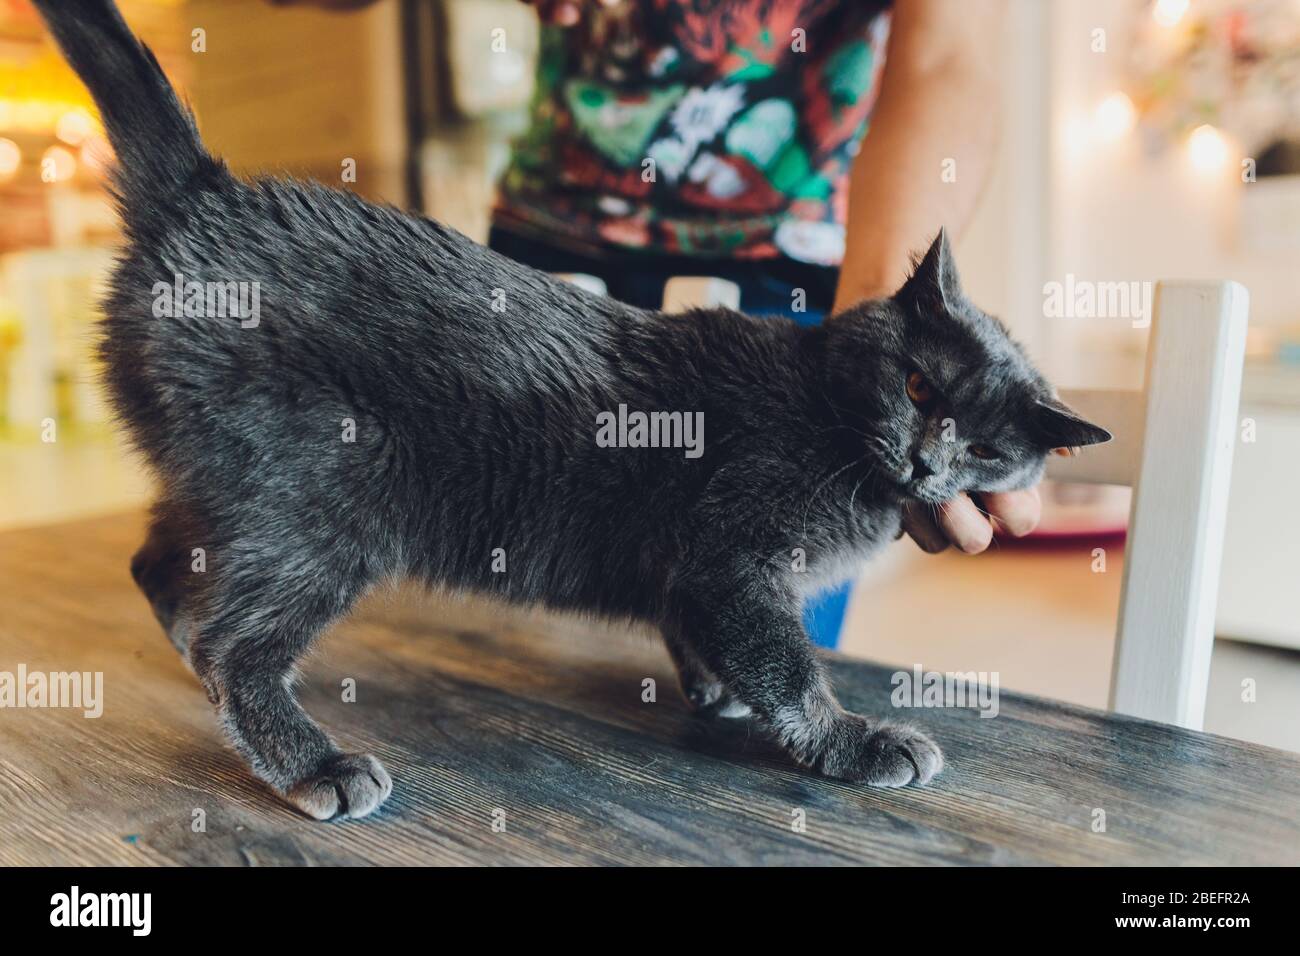 Nahaufnahme Katze Schnauze Porträt mit menschlichen Schlaganfall Finger  Hand Stockfotografie - Alamy